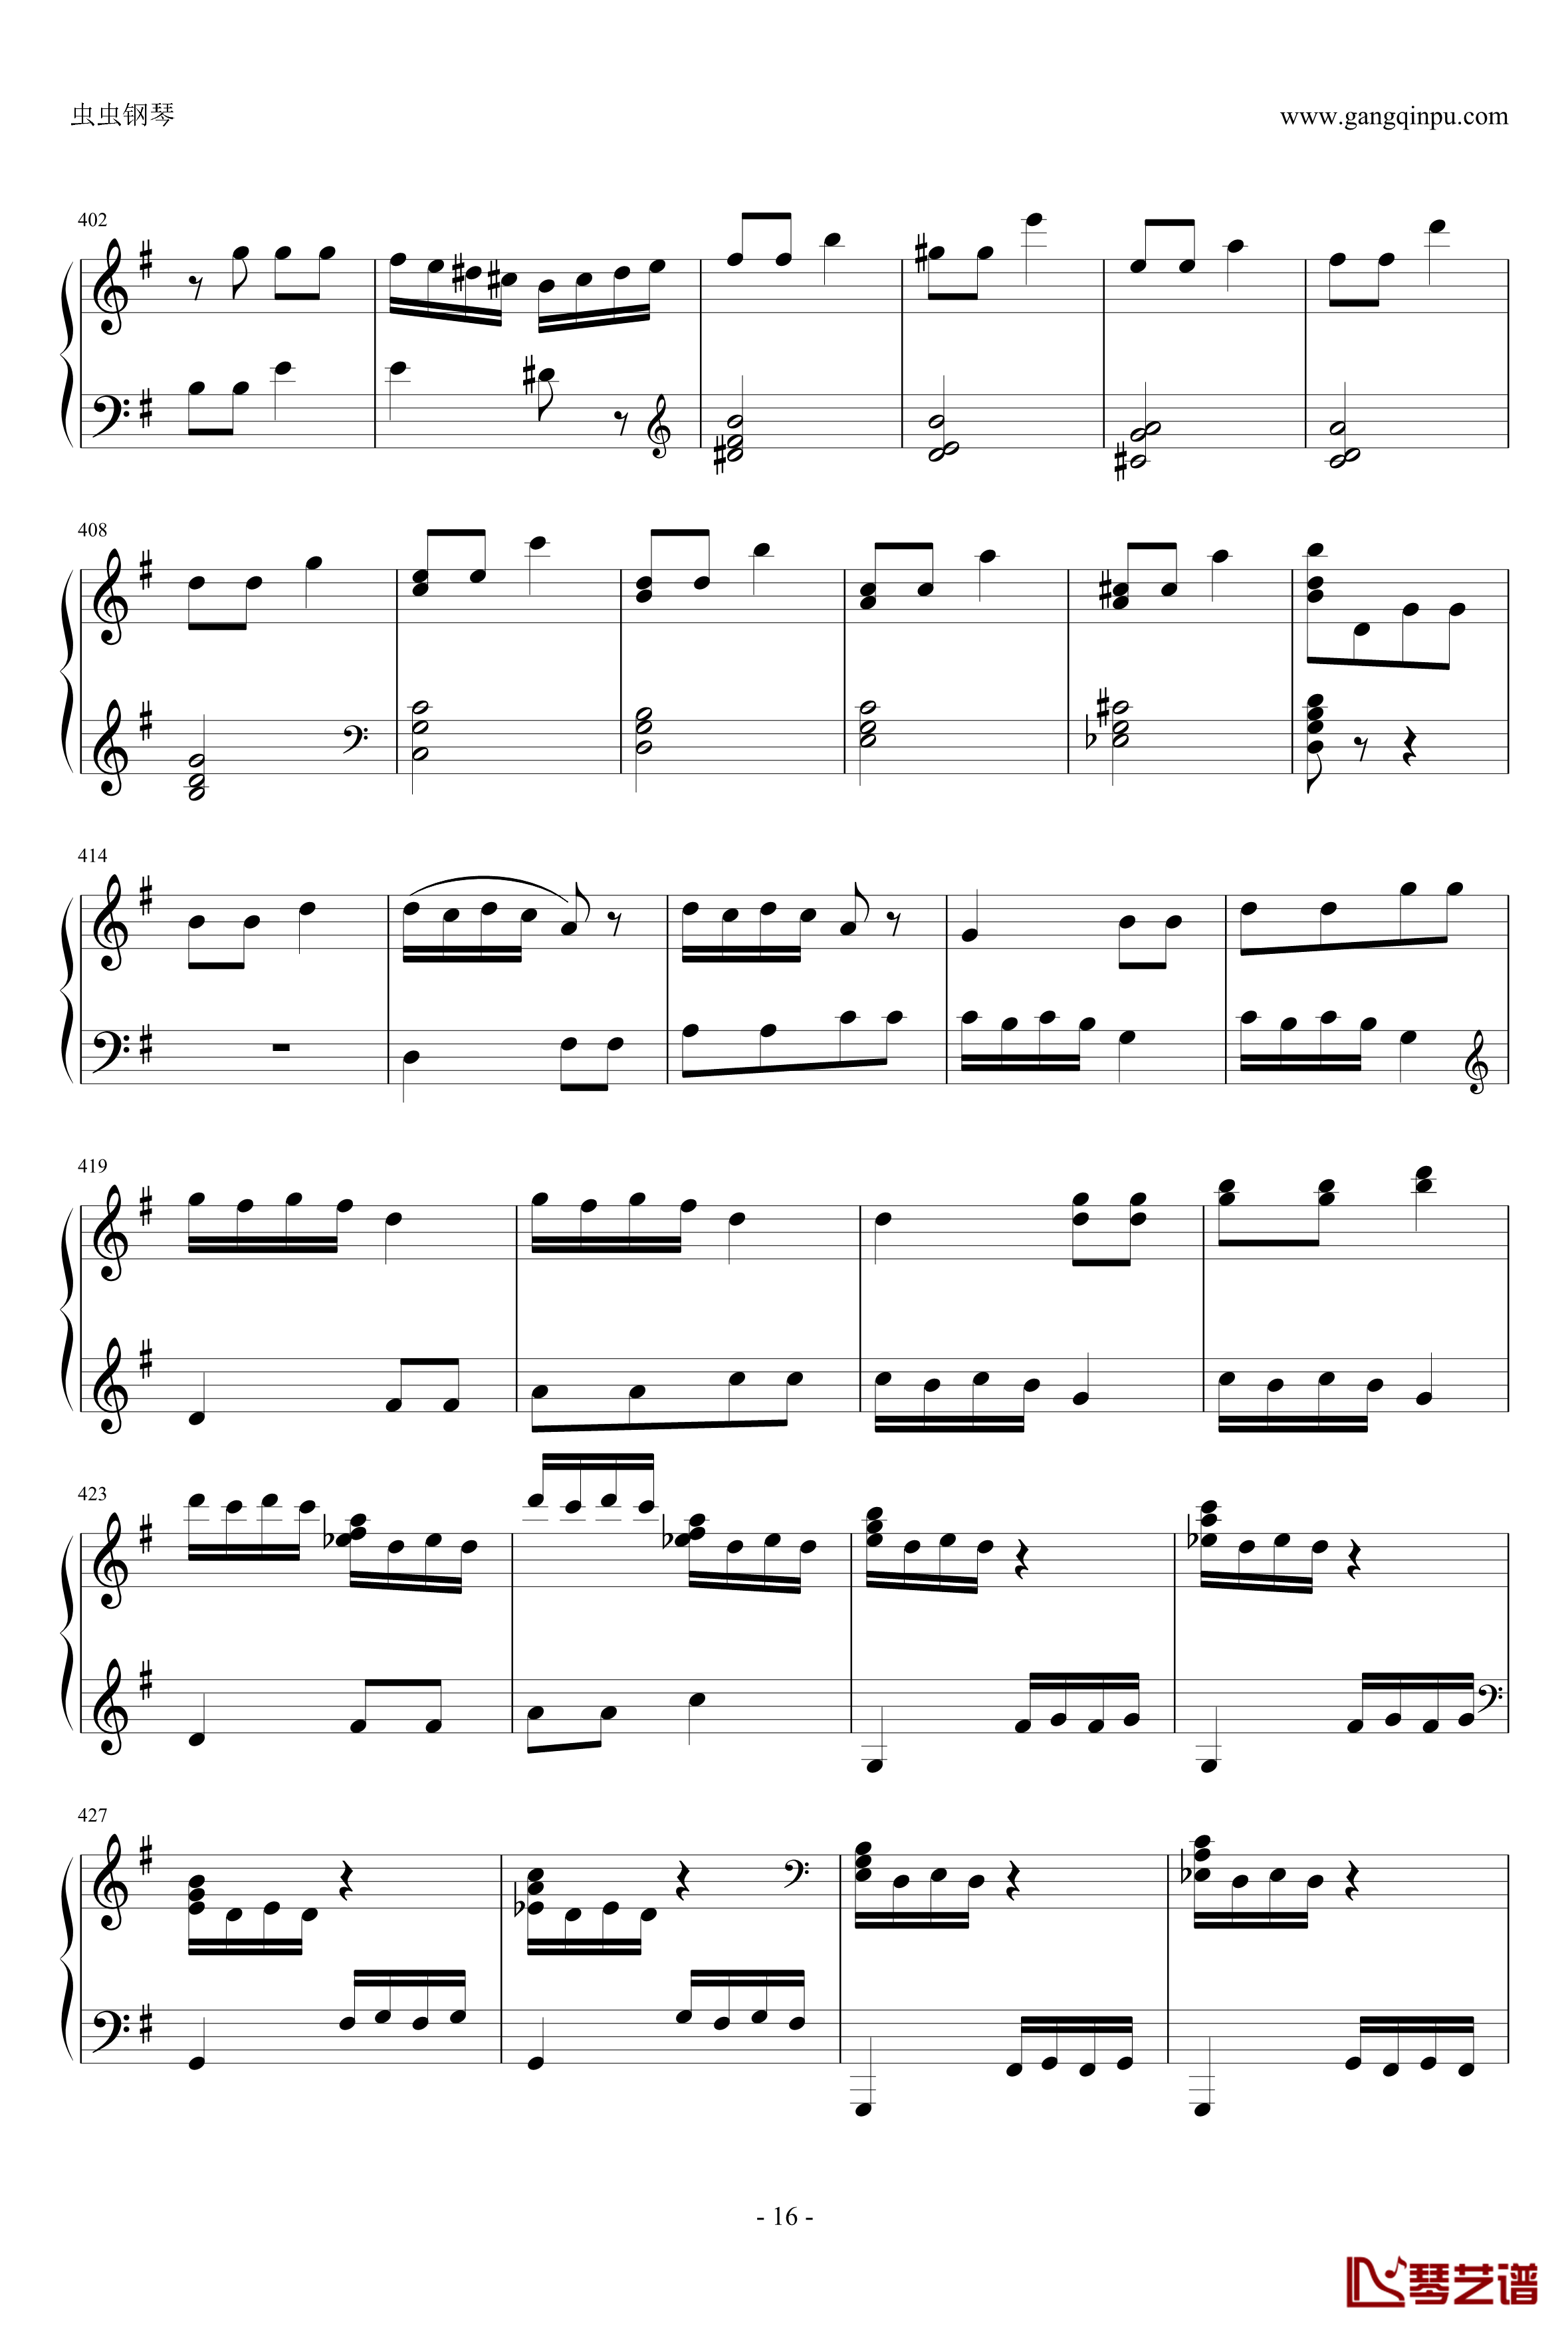 丢失一分钱的愤怒钢琴谱-贝多芬-beethoven16